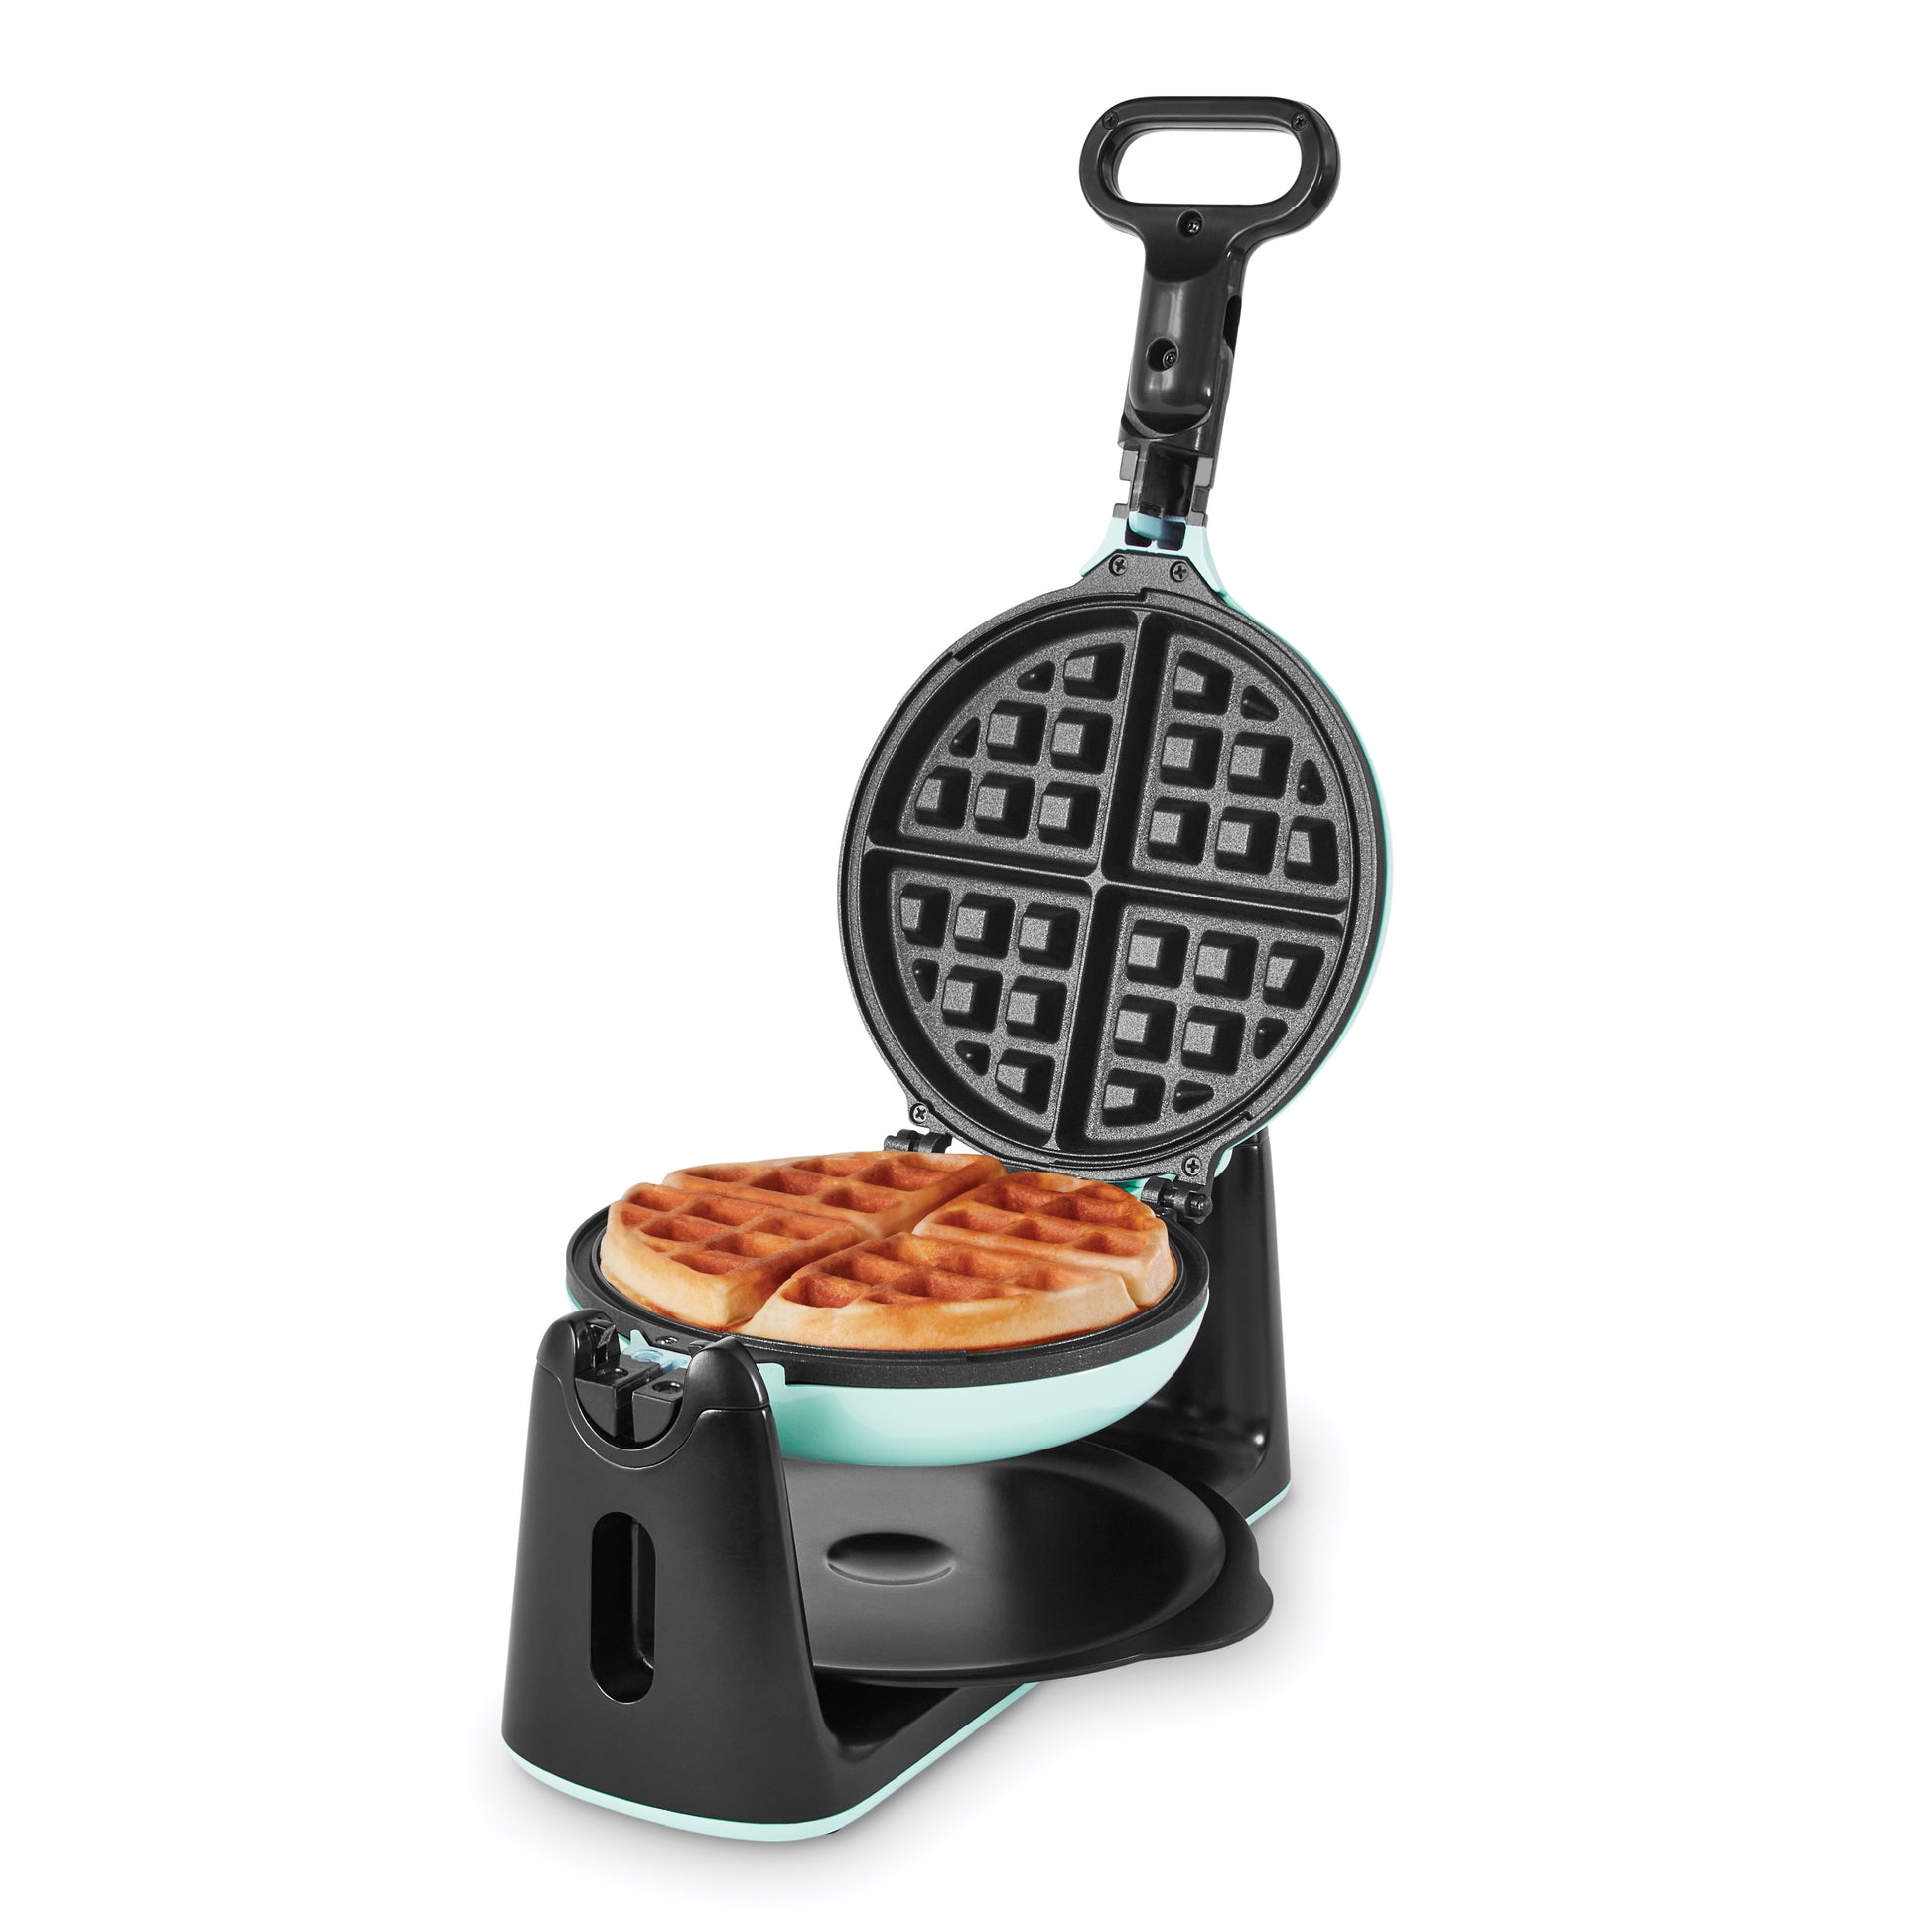 Dash No-Drip Nonstick Waffle Maker - Aqua